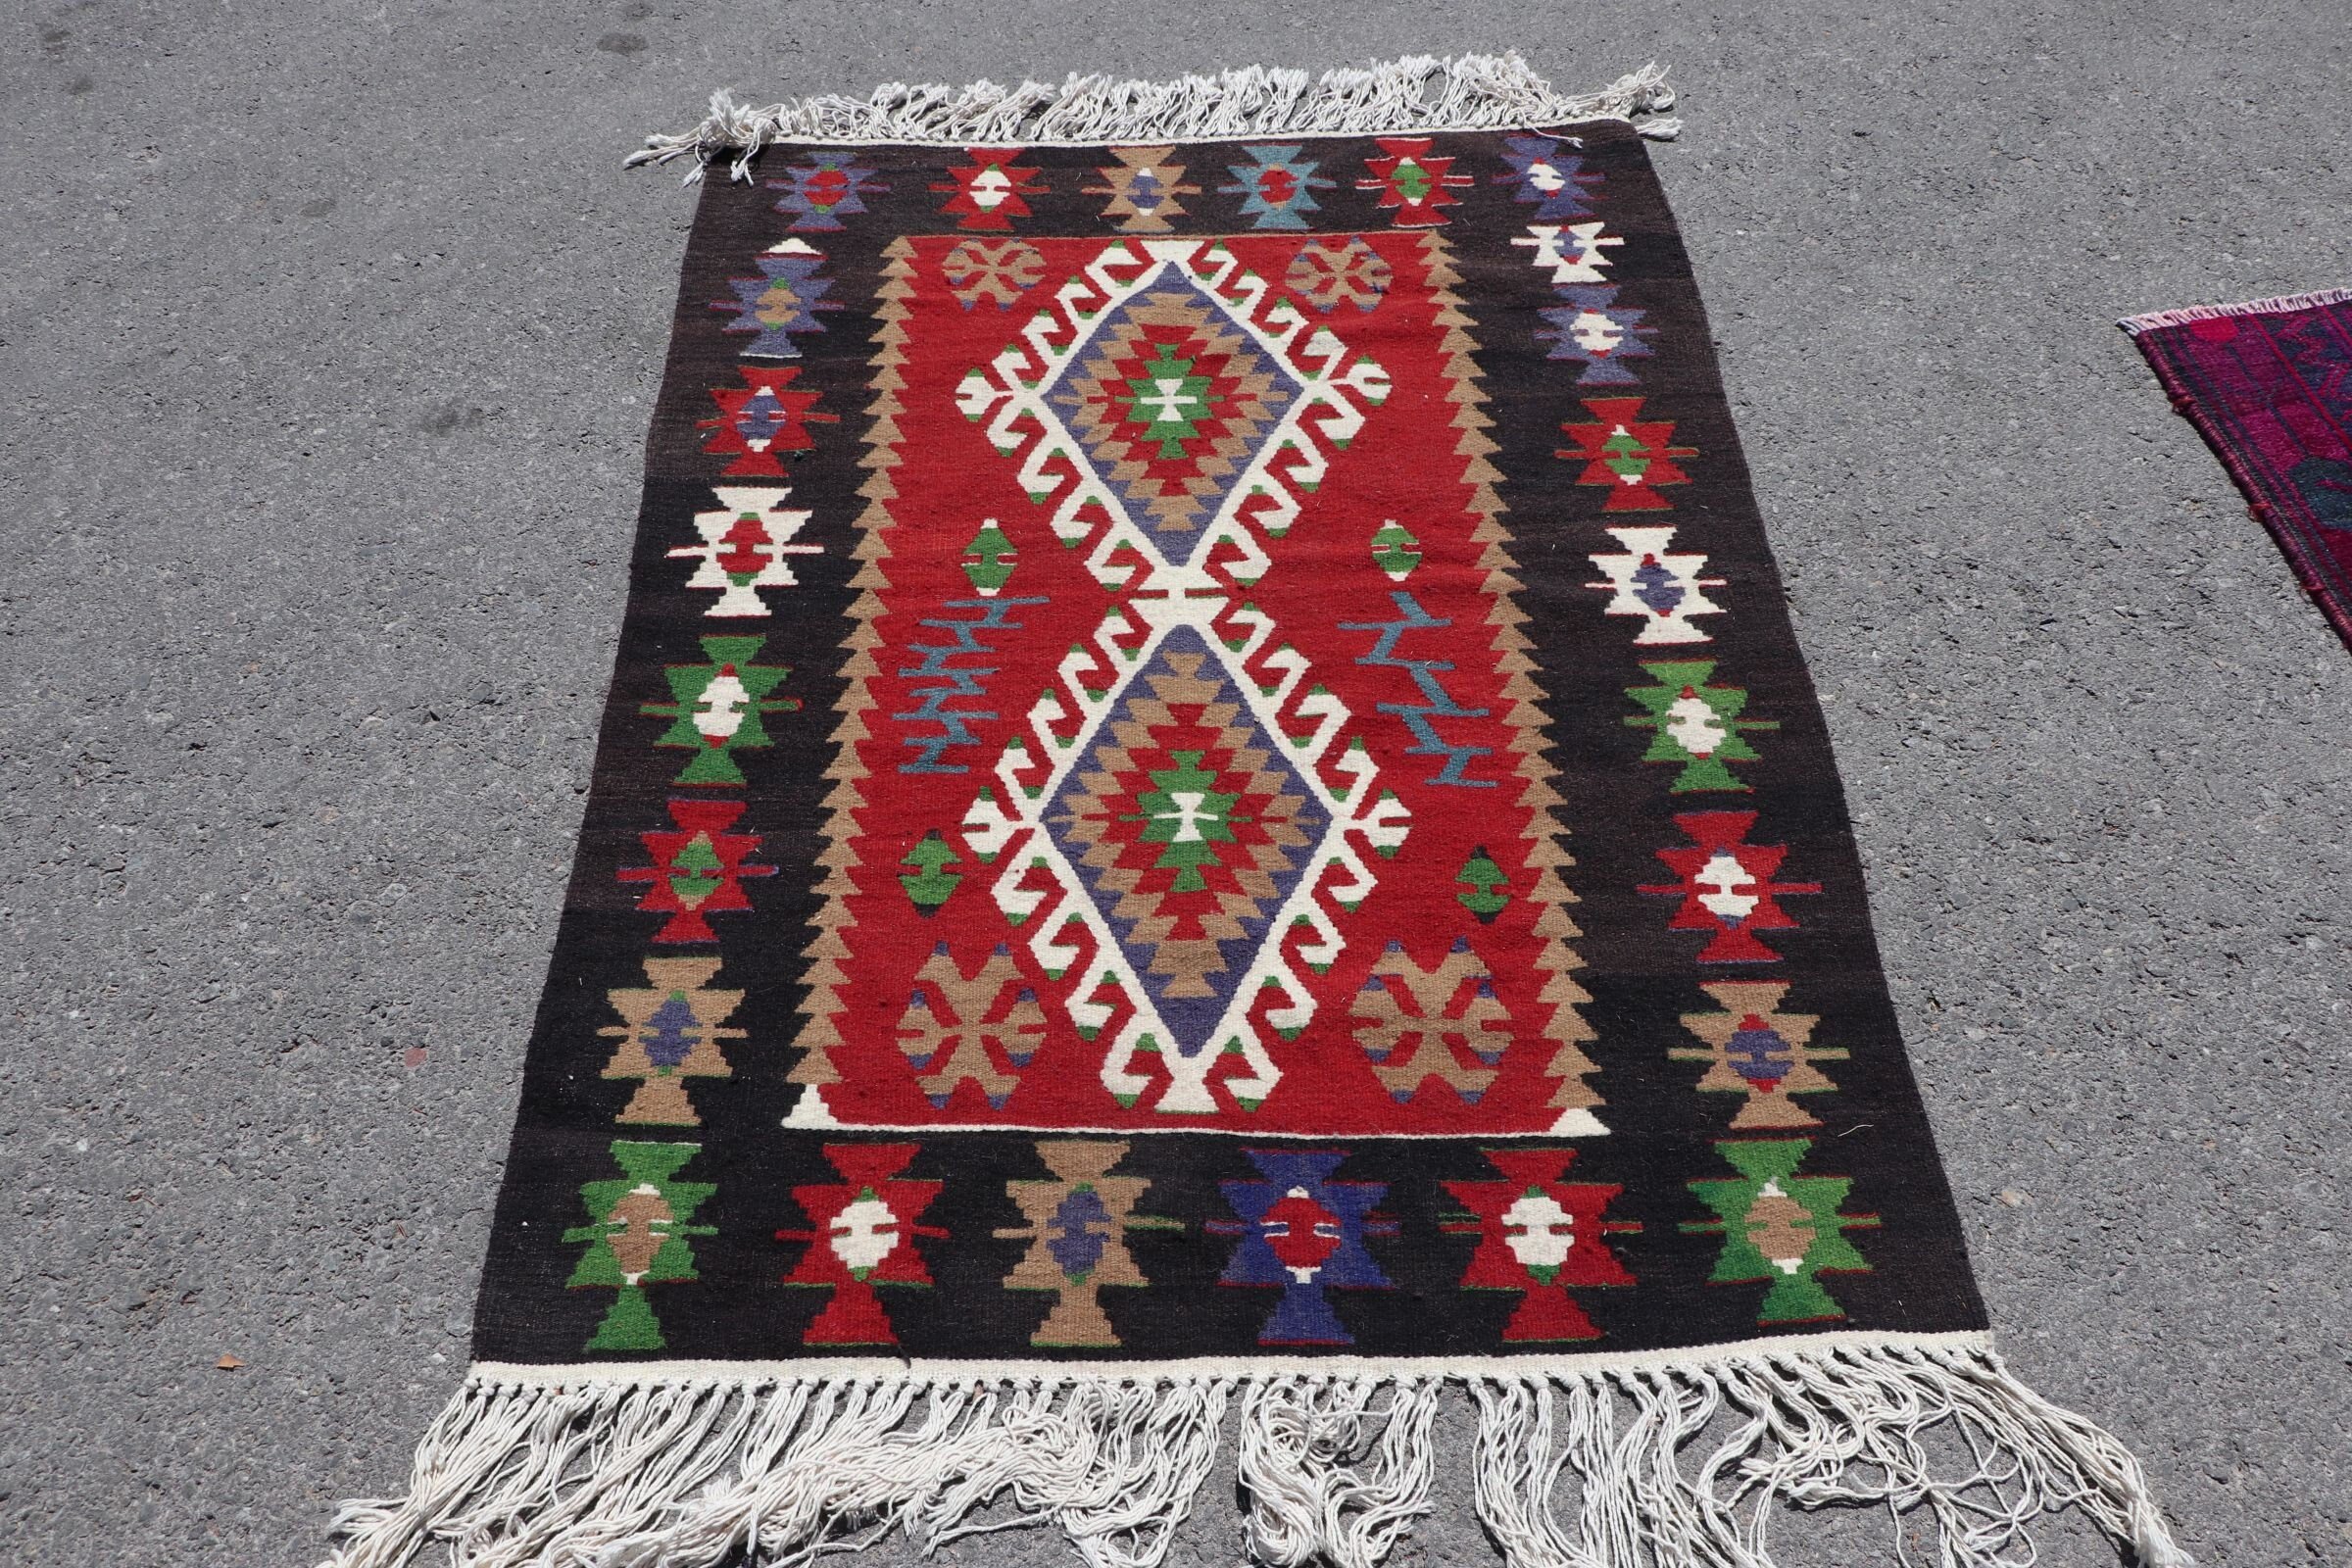 Oriental Rugs, Red Antique Rug, Vintage Rug, Turkish Rugs, Bedroom Rug, Kilim, Kitchen Rug, Floor Rug, Wool Rugs, 3.4x4.6 ft Accent Rug